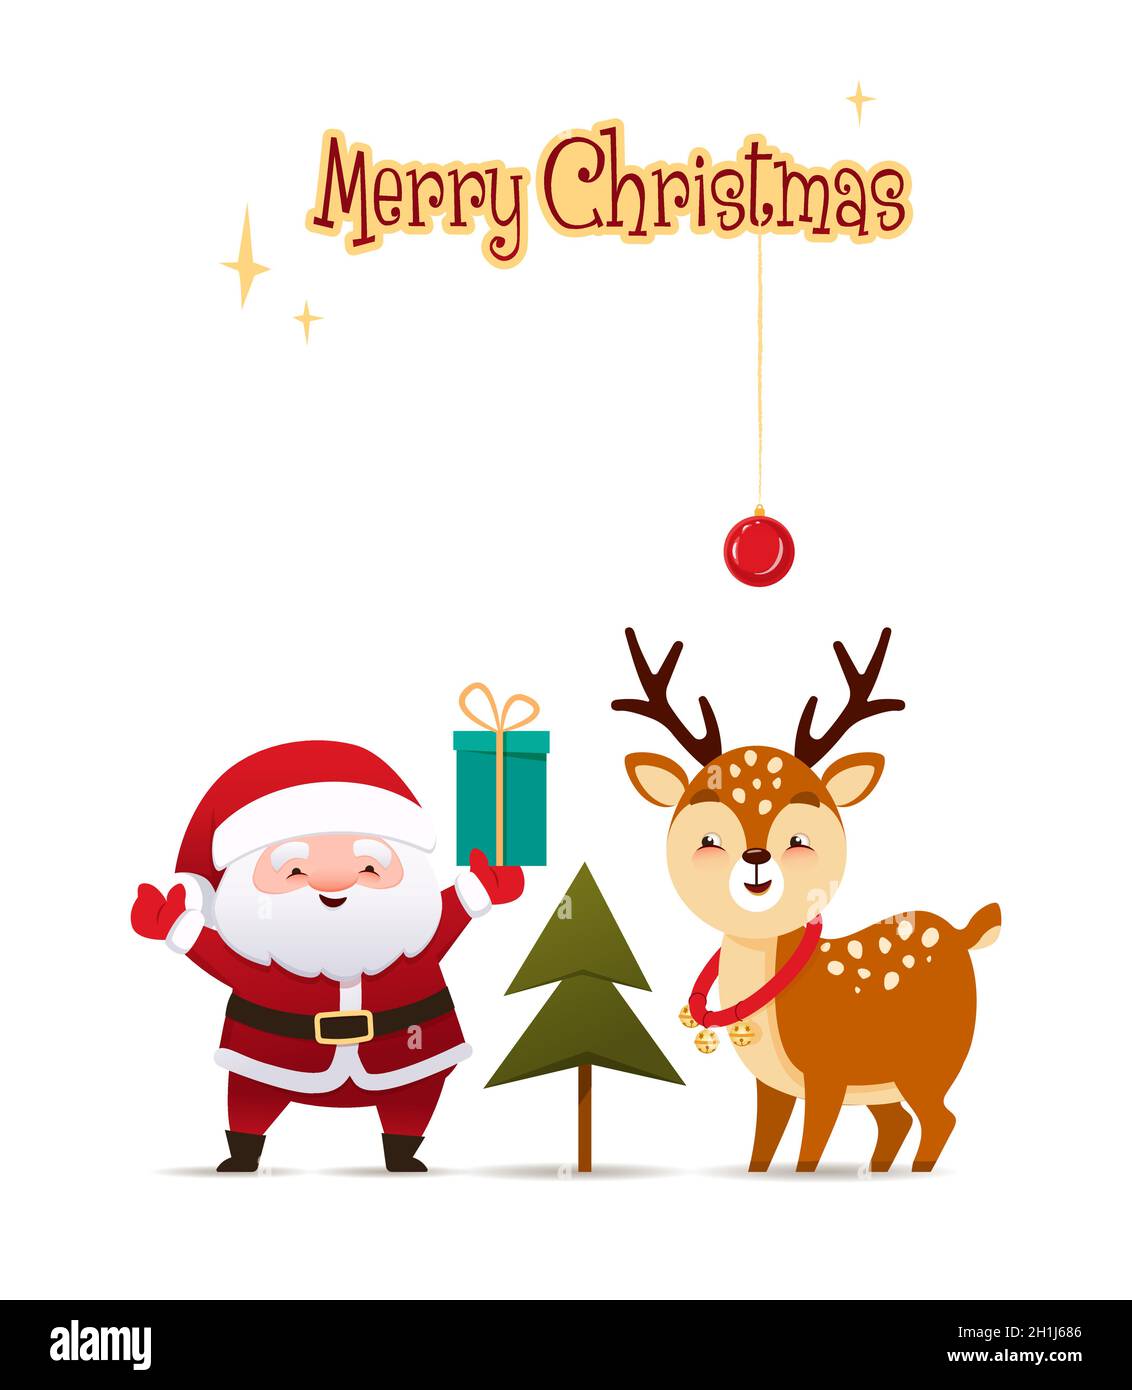 Le joli Père Noël à côté d'un cerf et d'un arbre de Noël tient une boîte cadeau.Joyeux Noël.Carte de vœux, bannière.Illustration vectorielle , dessin animé Illustration de Vecteur